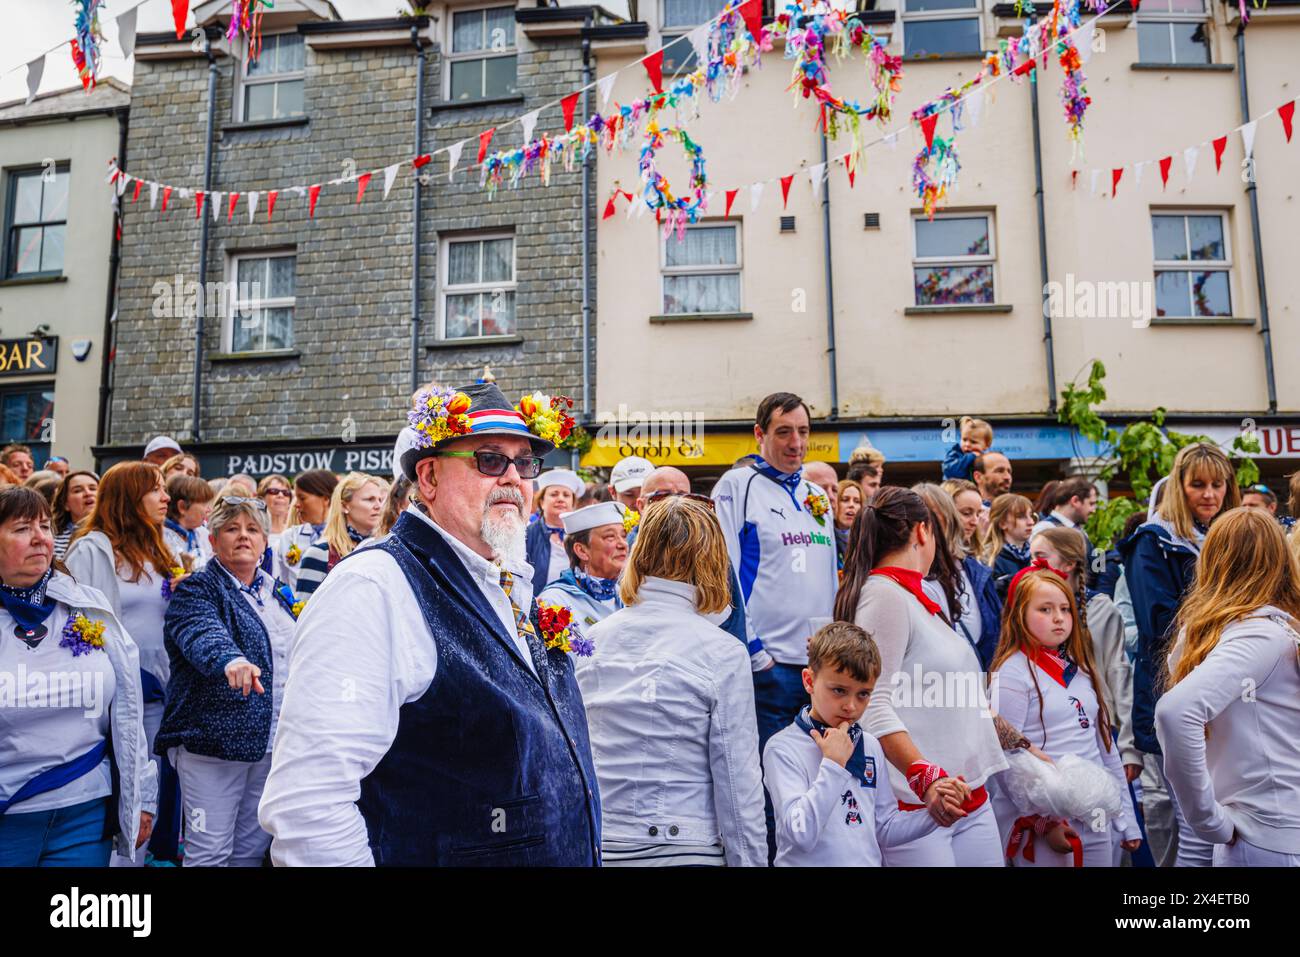 Un participant porte un chapeau avec des guirlandes de bluebells et de cowslips pour le festival 'Obby 'Oss', un événement folklorique annuel le 1er mai à Padstow, Cornwall Banque D'Images